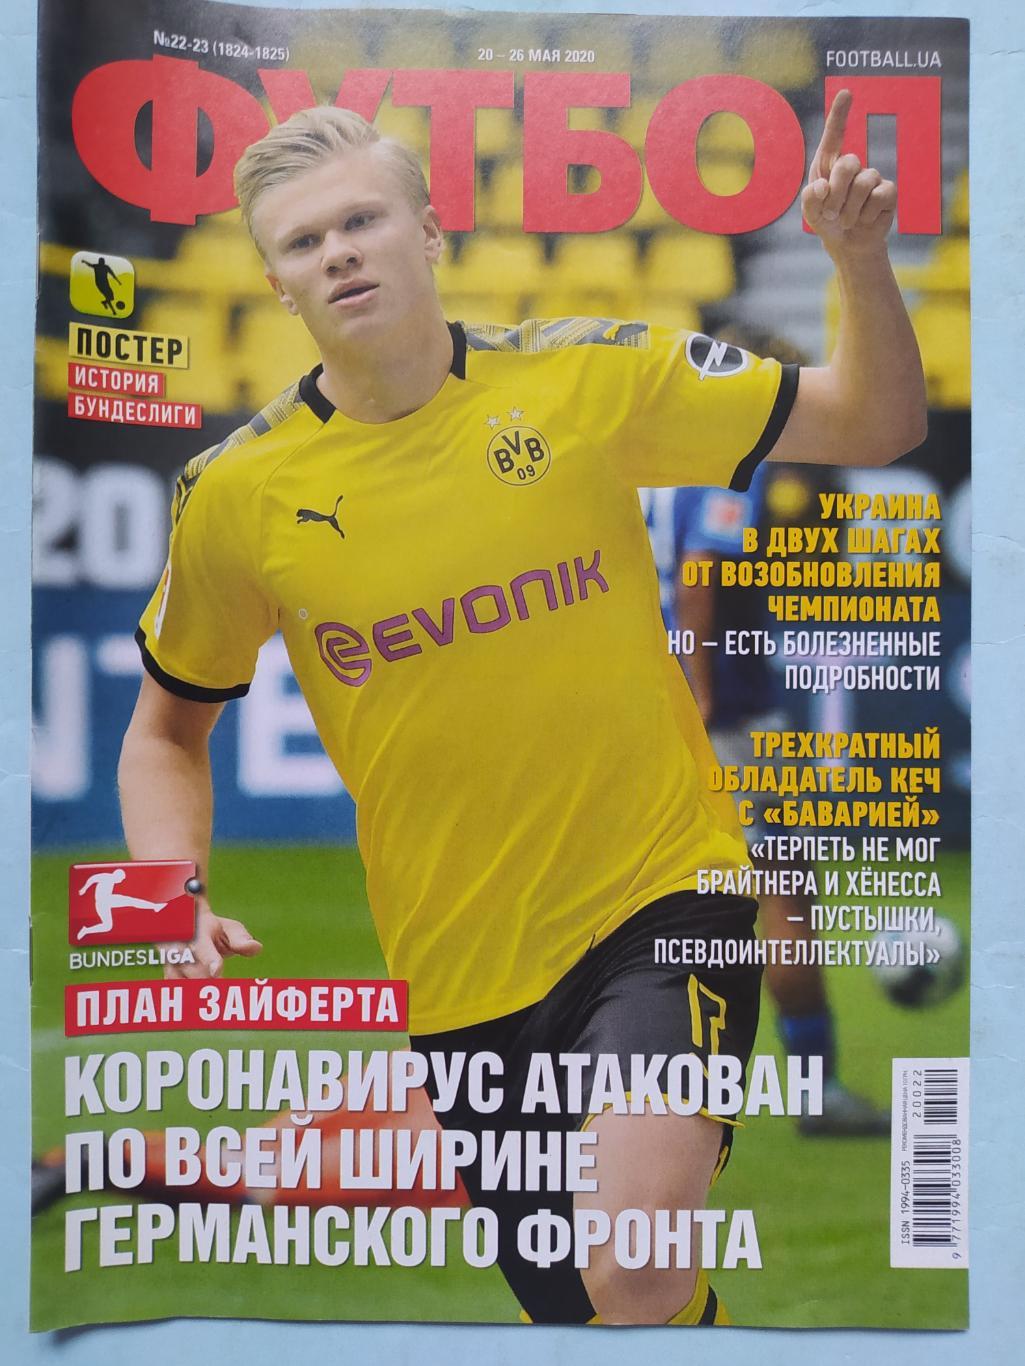 Еженедельник Футбол Украина № 22 - 23 за 2020 год